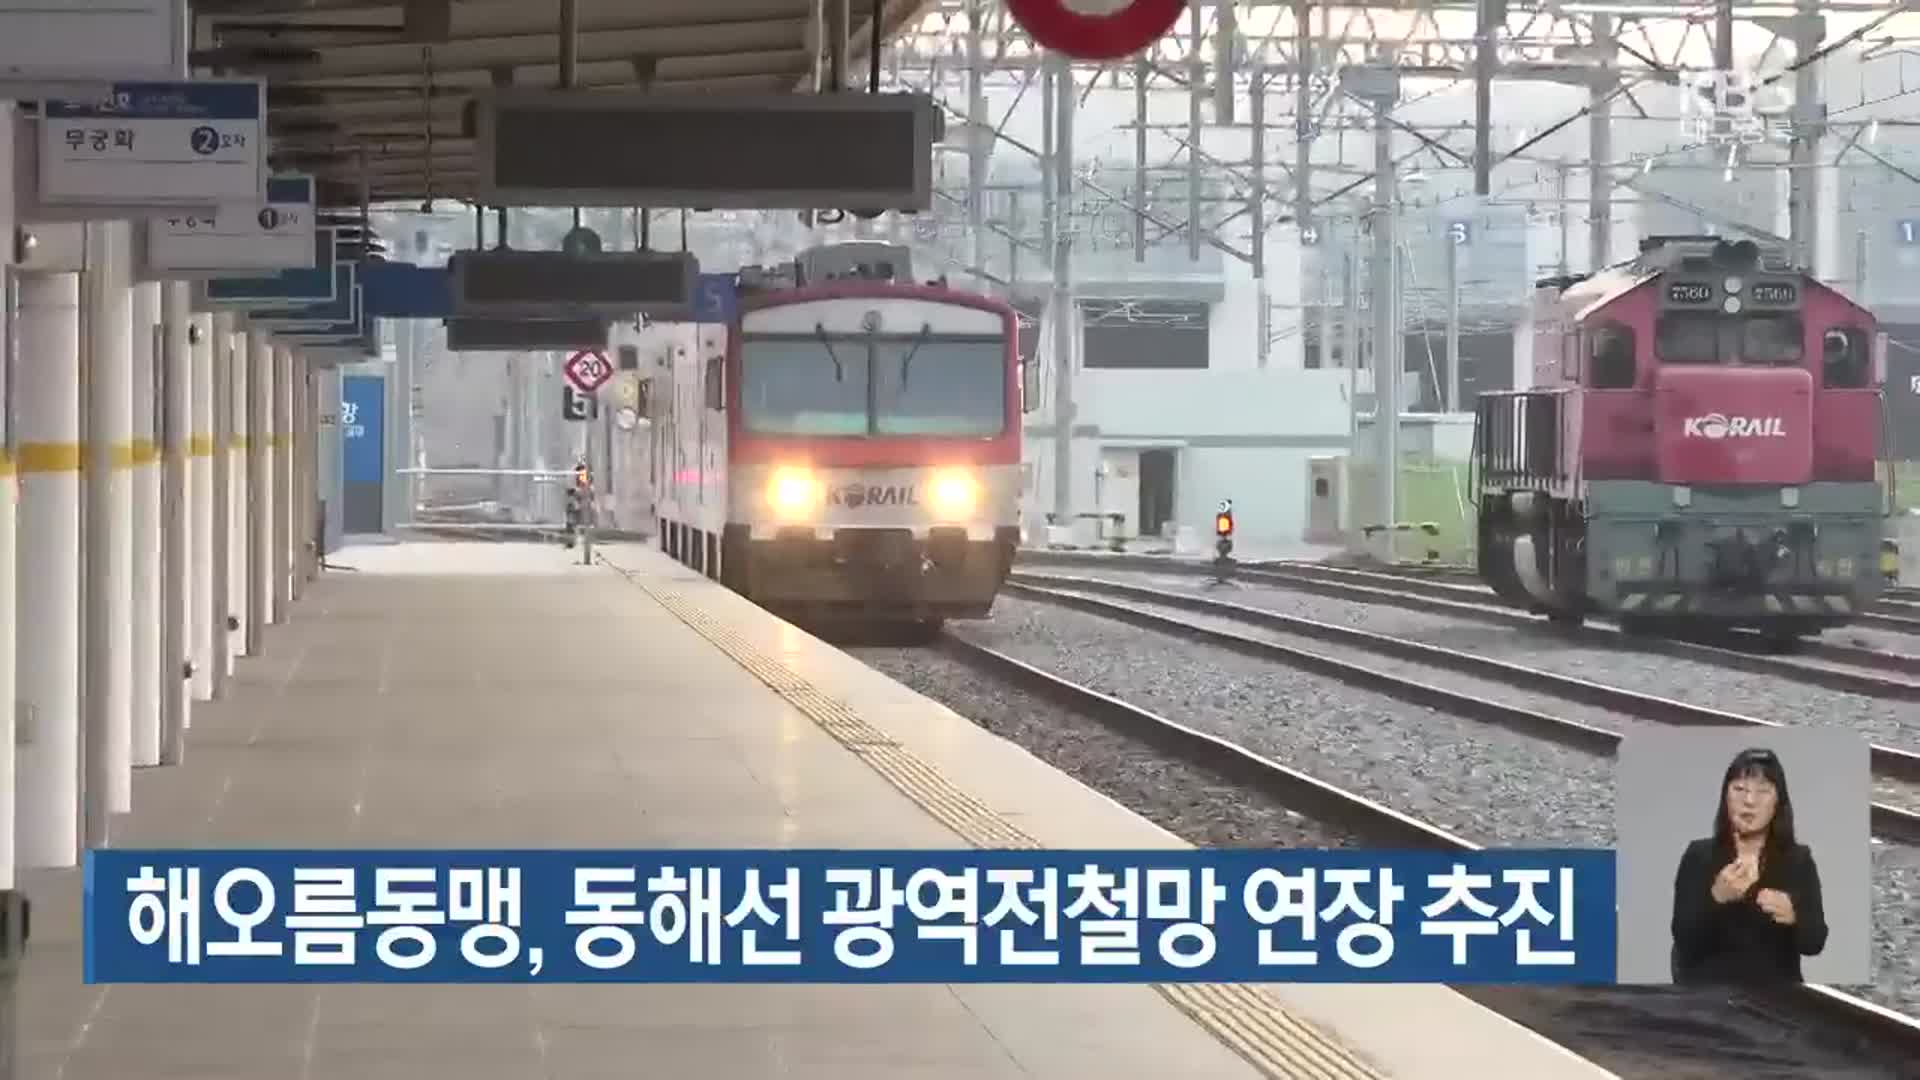 해오름동맹, 동해선 광역전철망 연장 추진